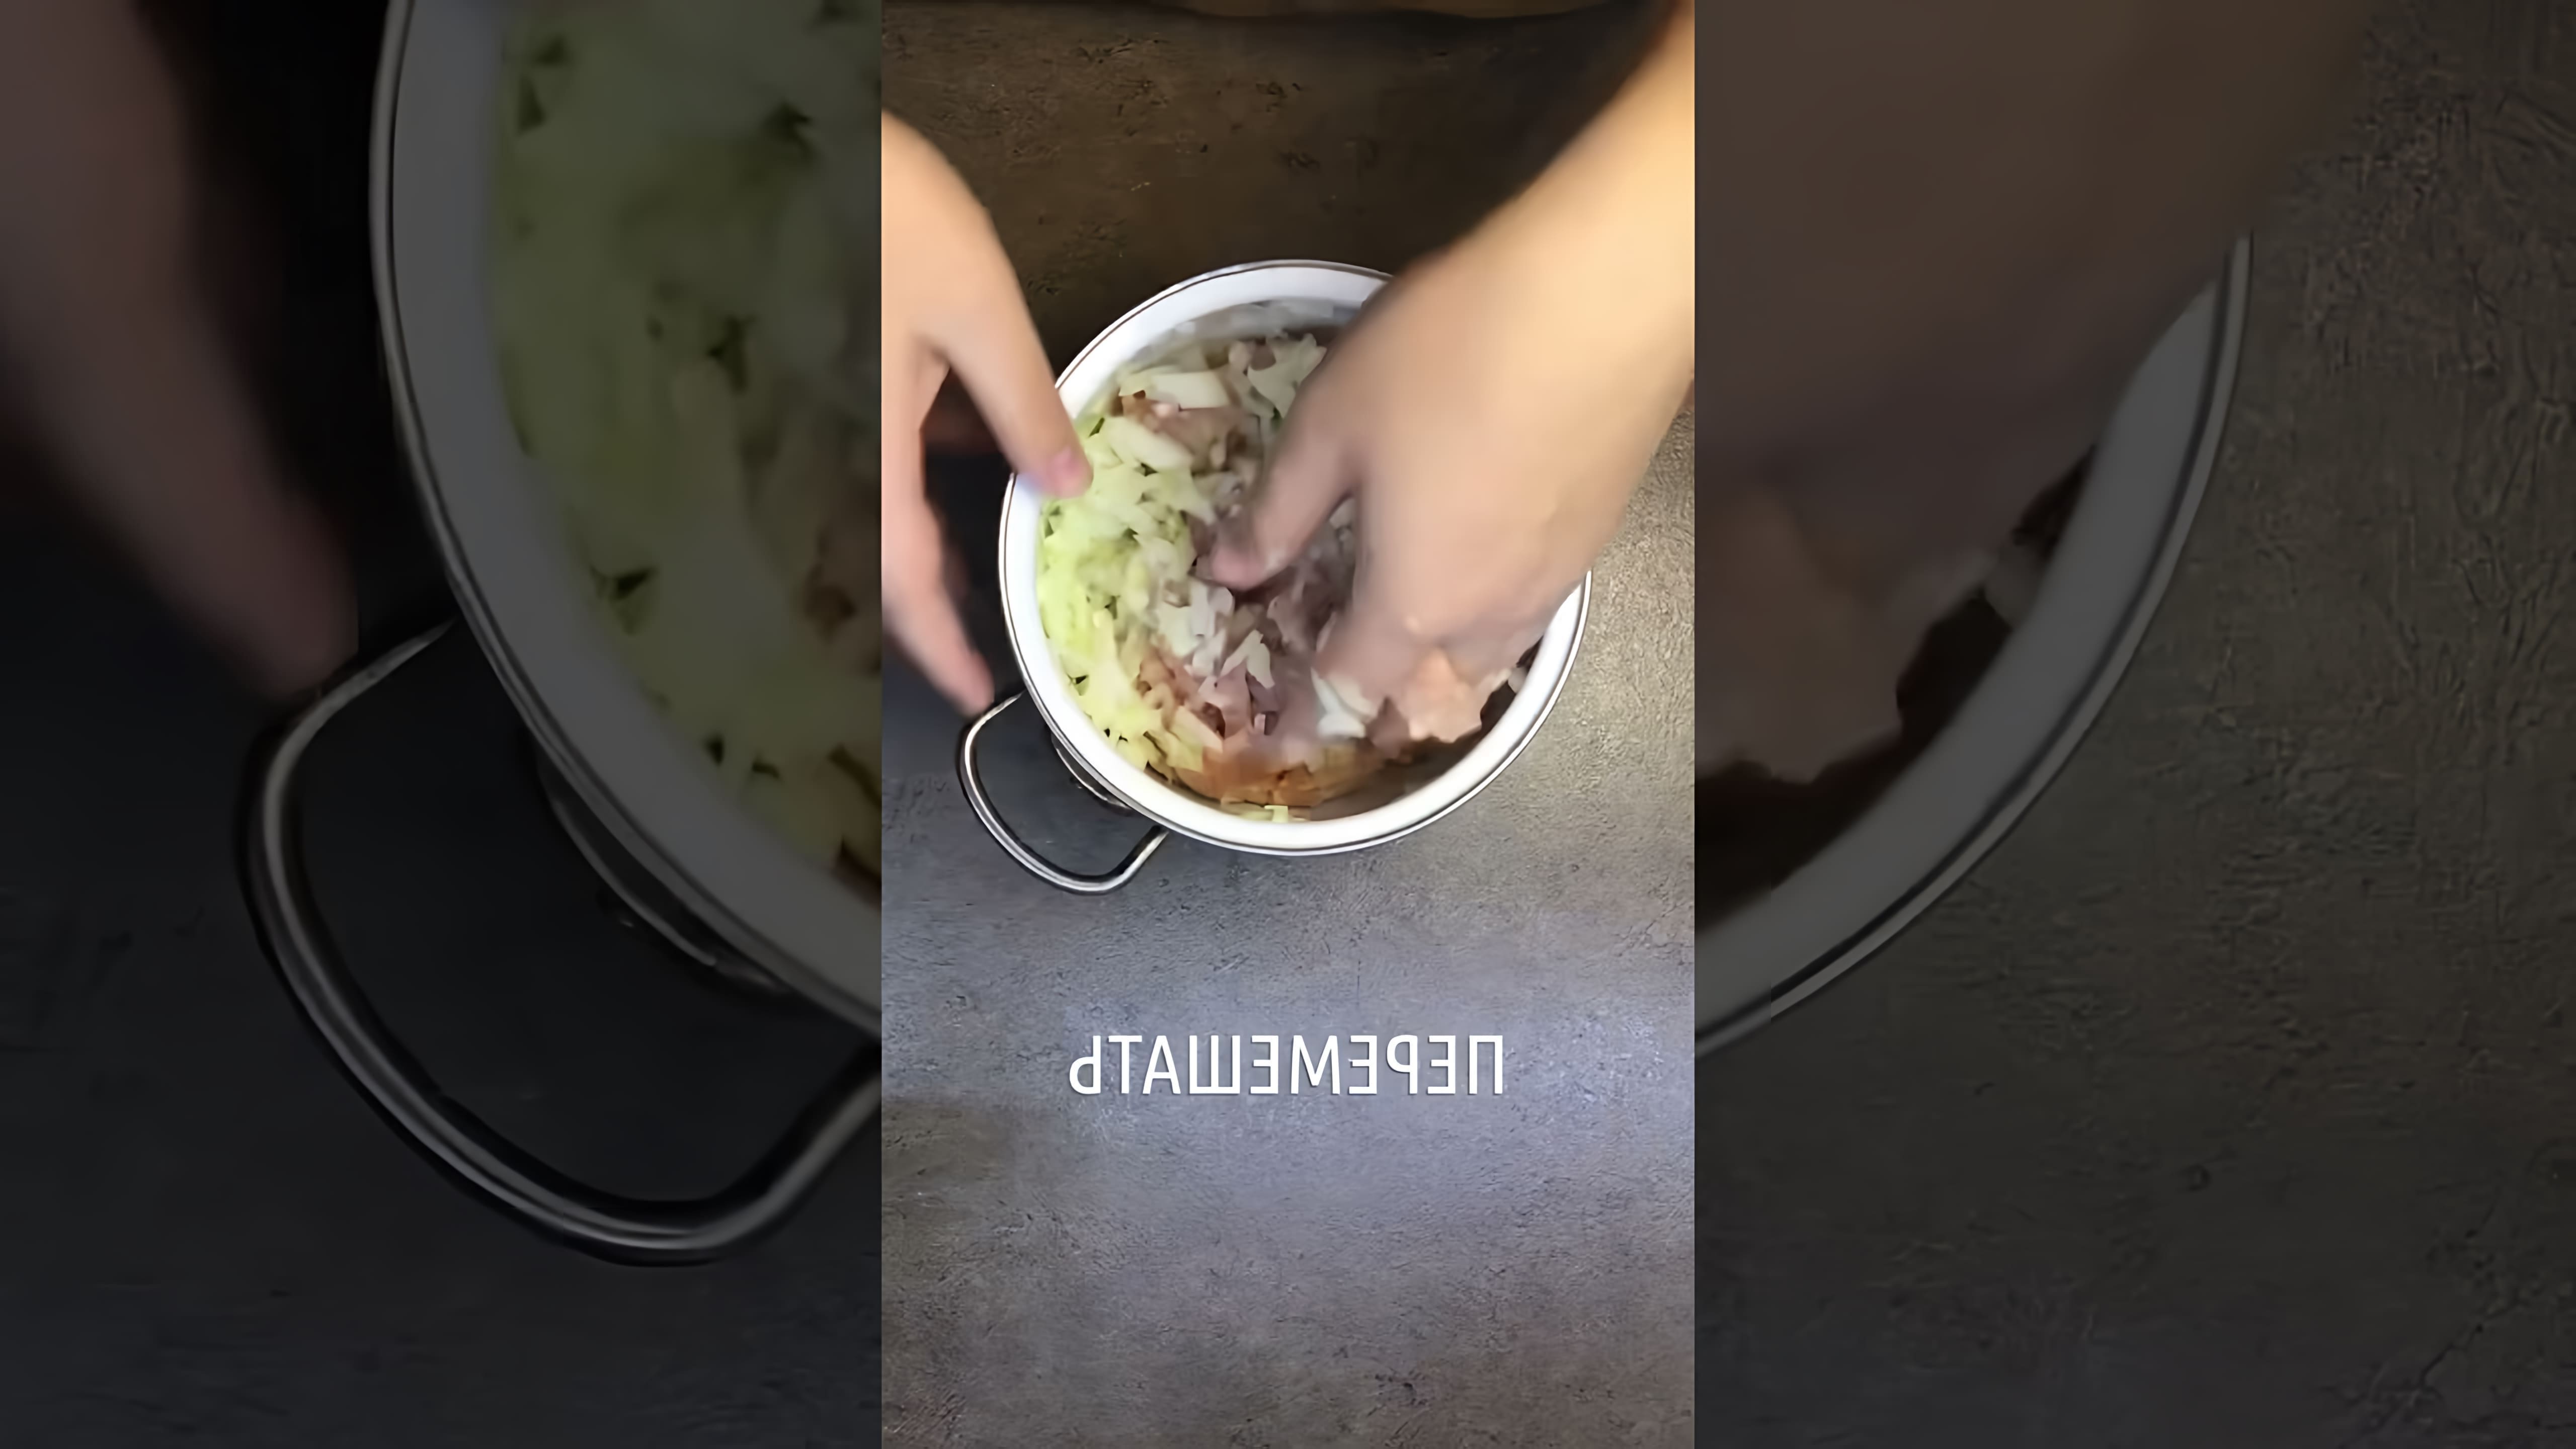 В этом видео демонстрируется процесс приготовления фаршированных гнезд в духовке